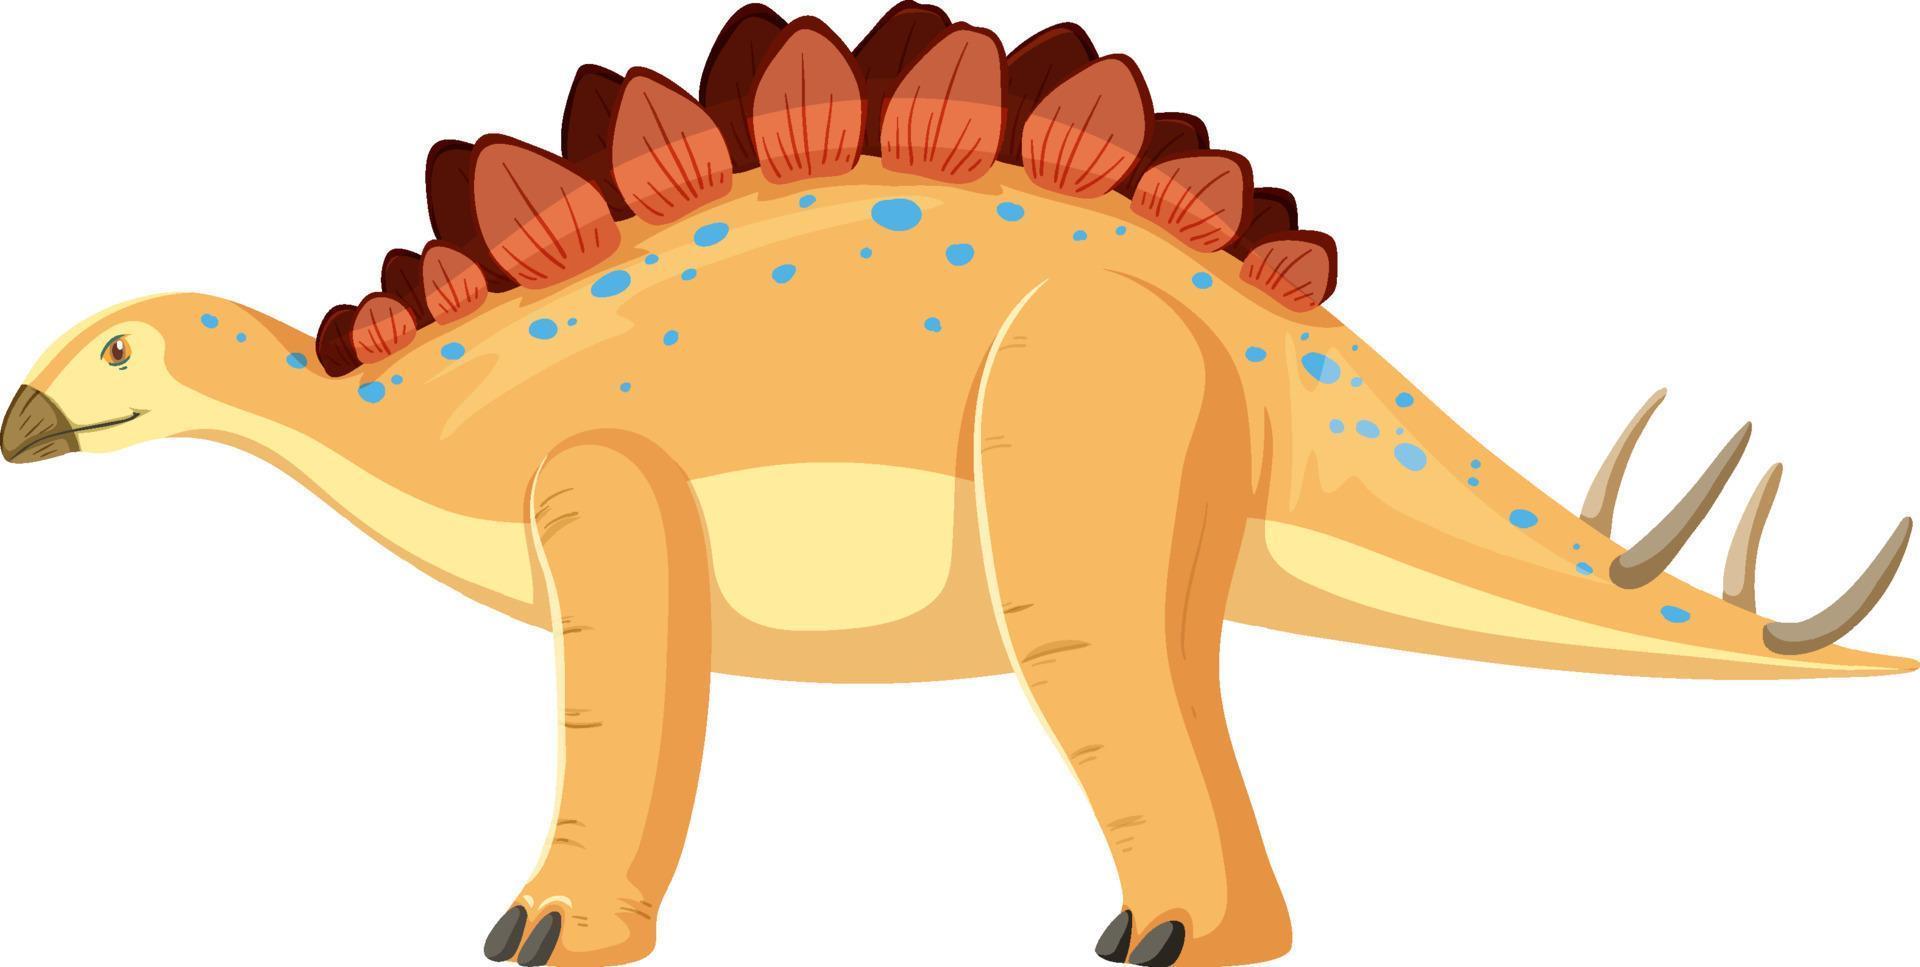 Stegosaurus dinosaur on white background vector